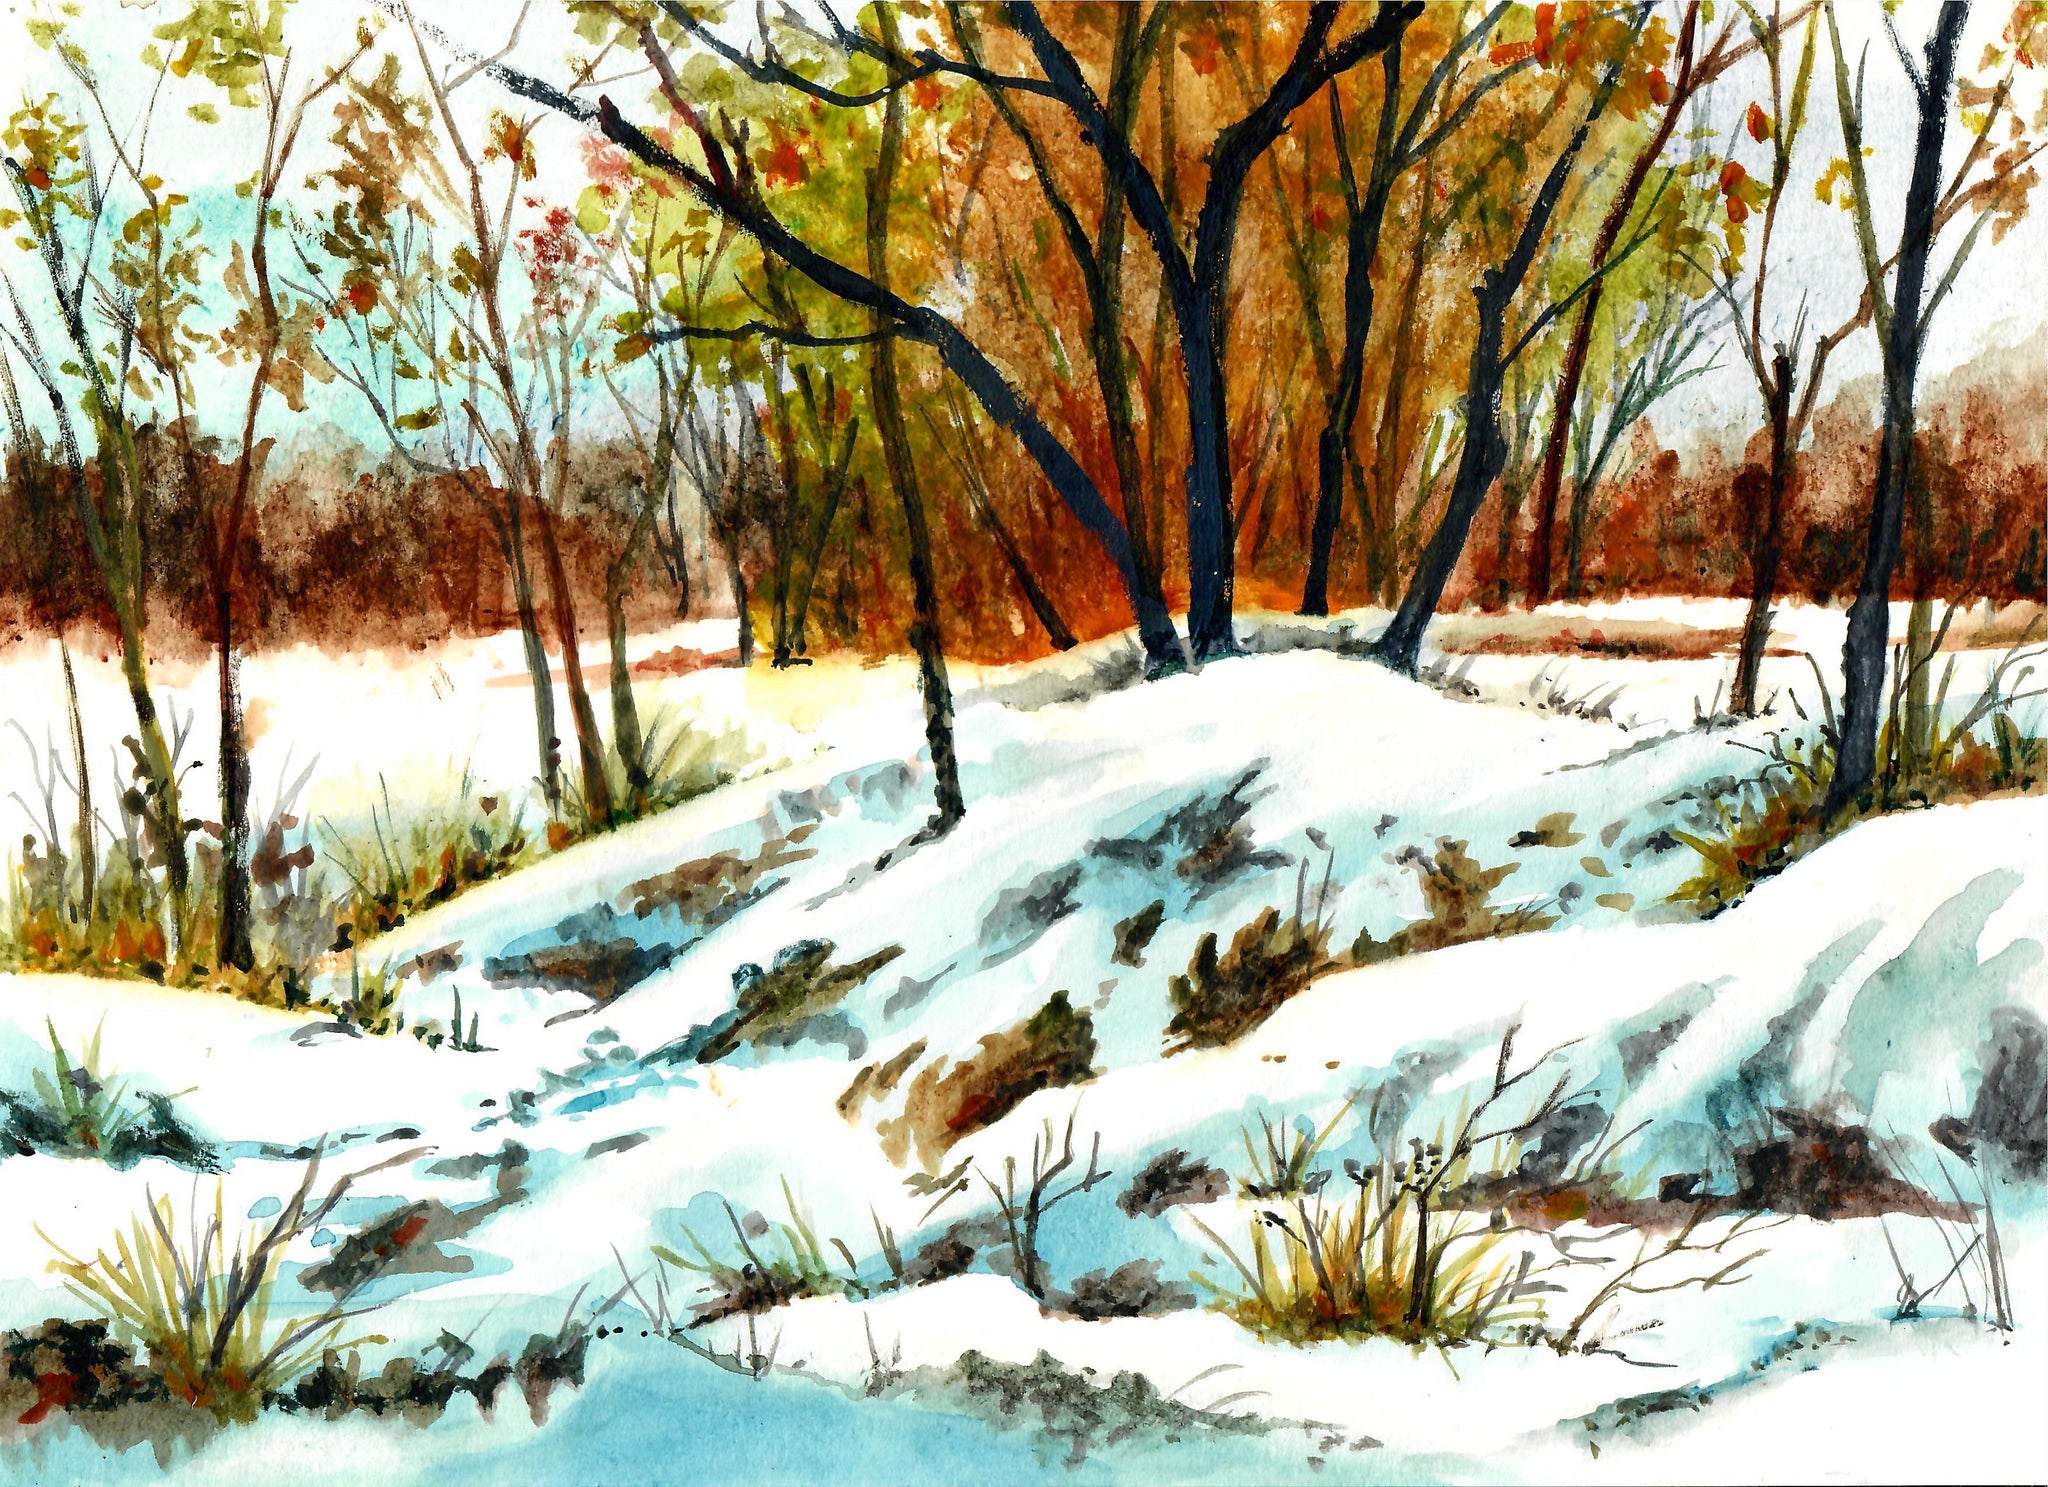 Nature - Winter In The Field, Winter Scene, Snow Scene, Snow Wall Decor, Snow Bank